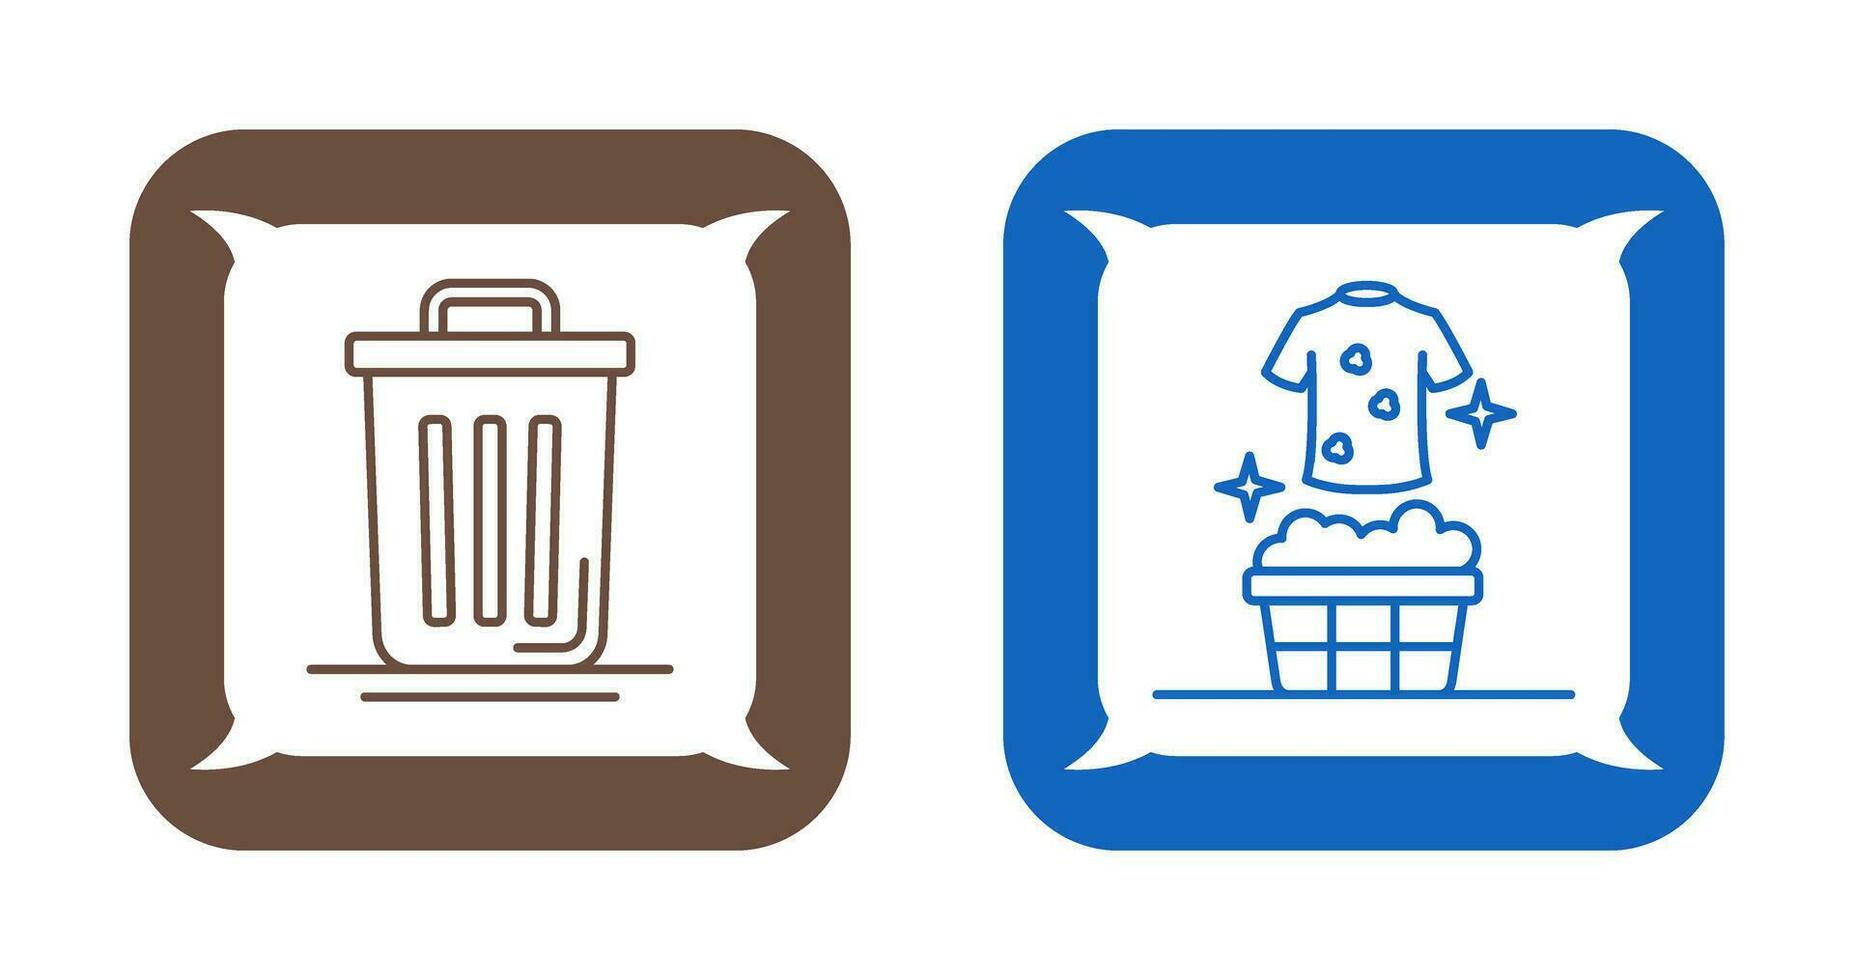 Müll können und Waschsalon Symbol vektor